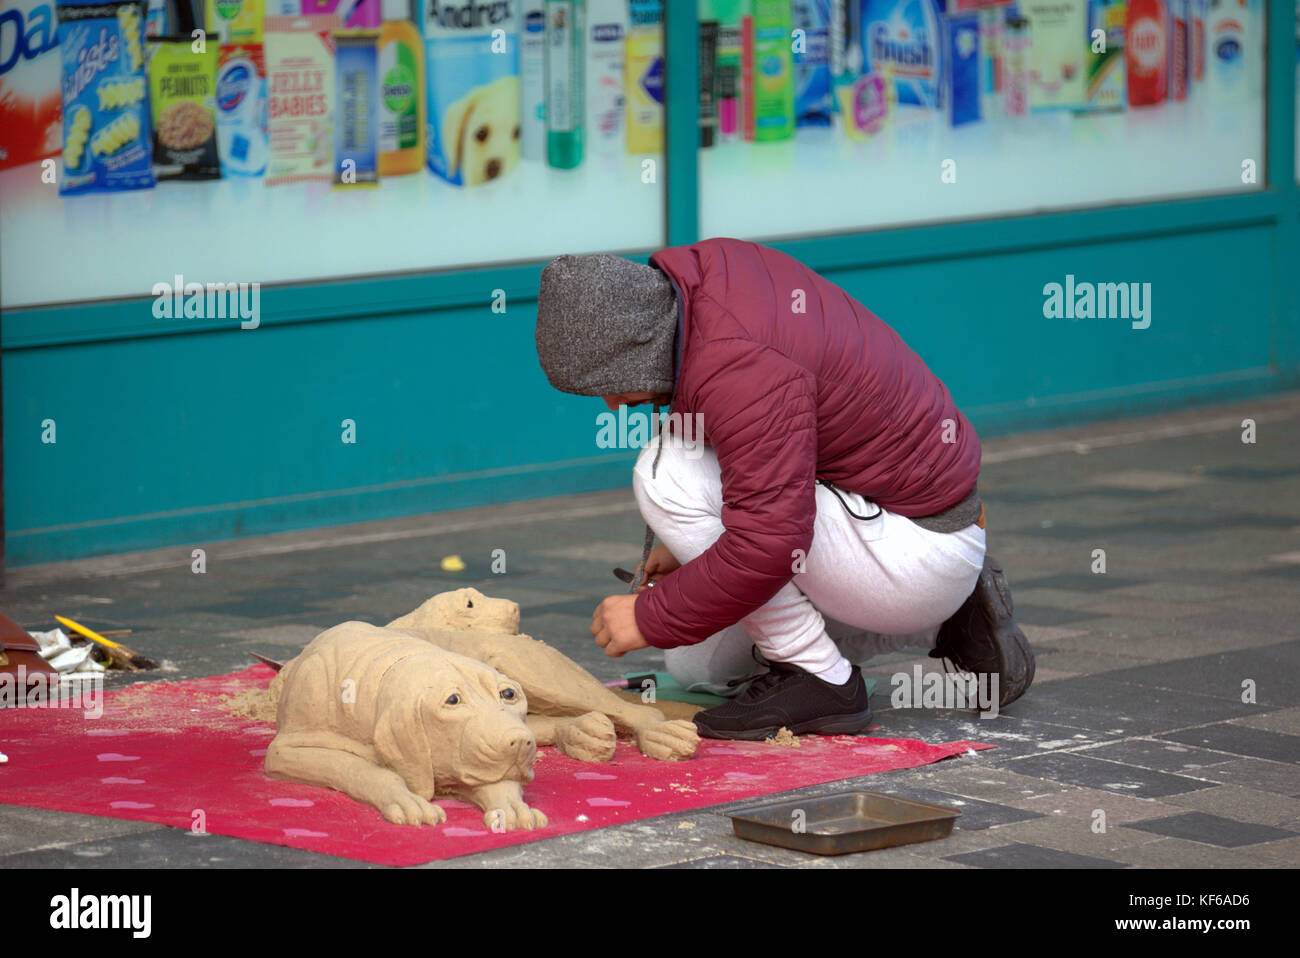 Demandeur d'asile des réfugiés mendiant sculpteur sculpture statue chien sable Sauchiehall Street Glasgow uk Banque D'Images